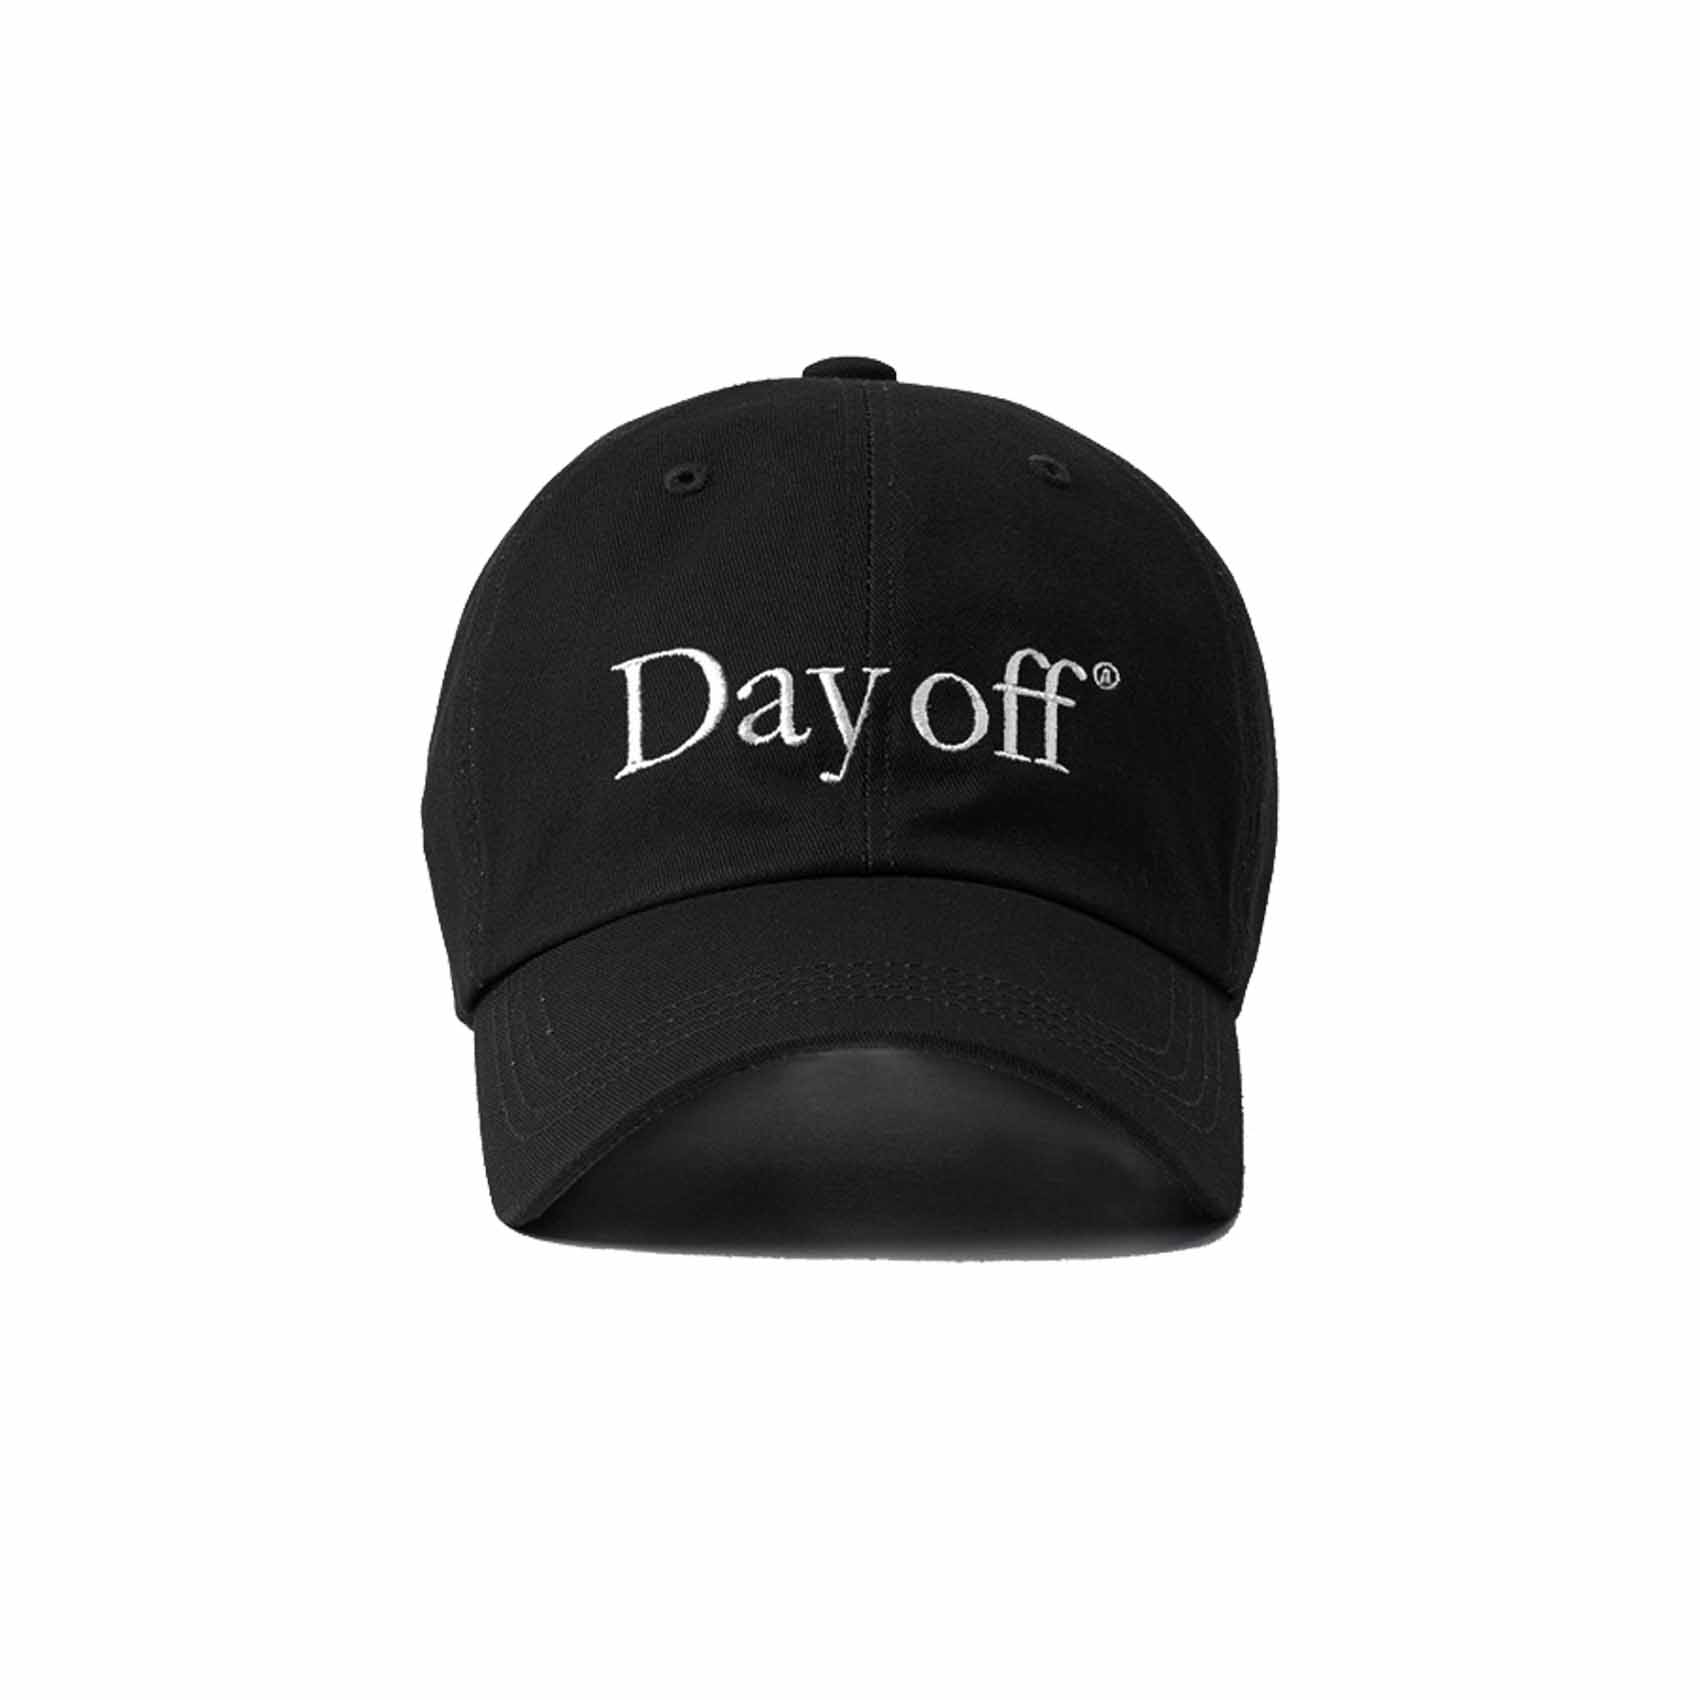 DAY OFF CAP - BLACK